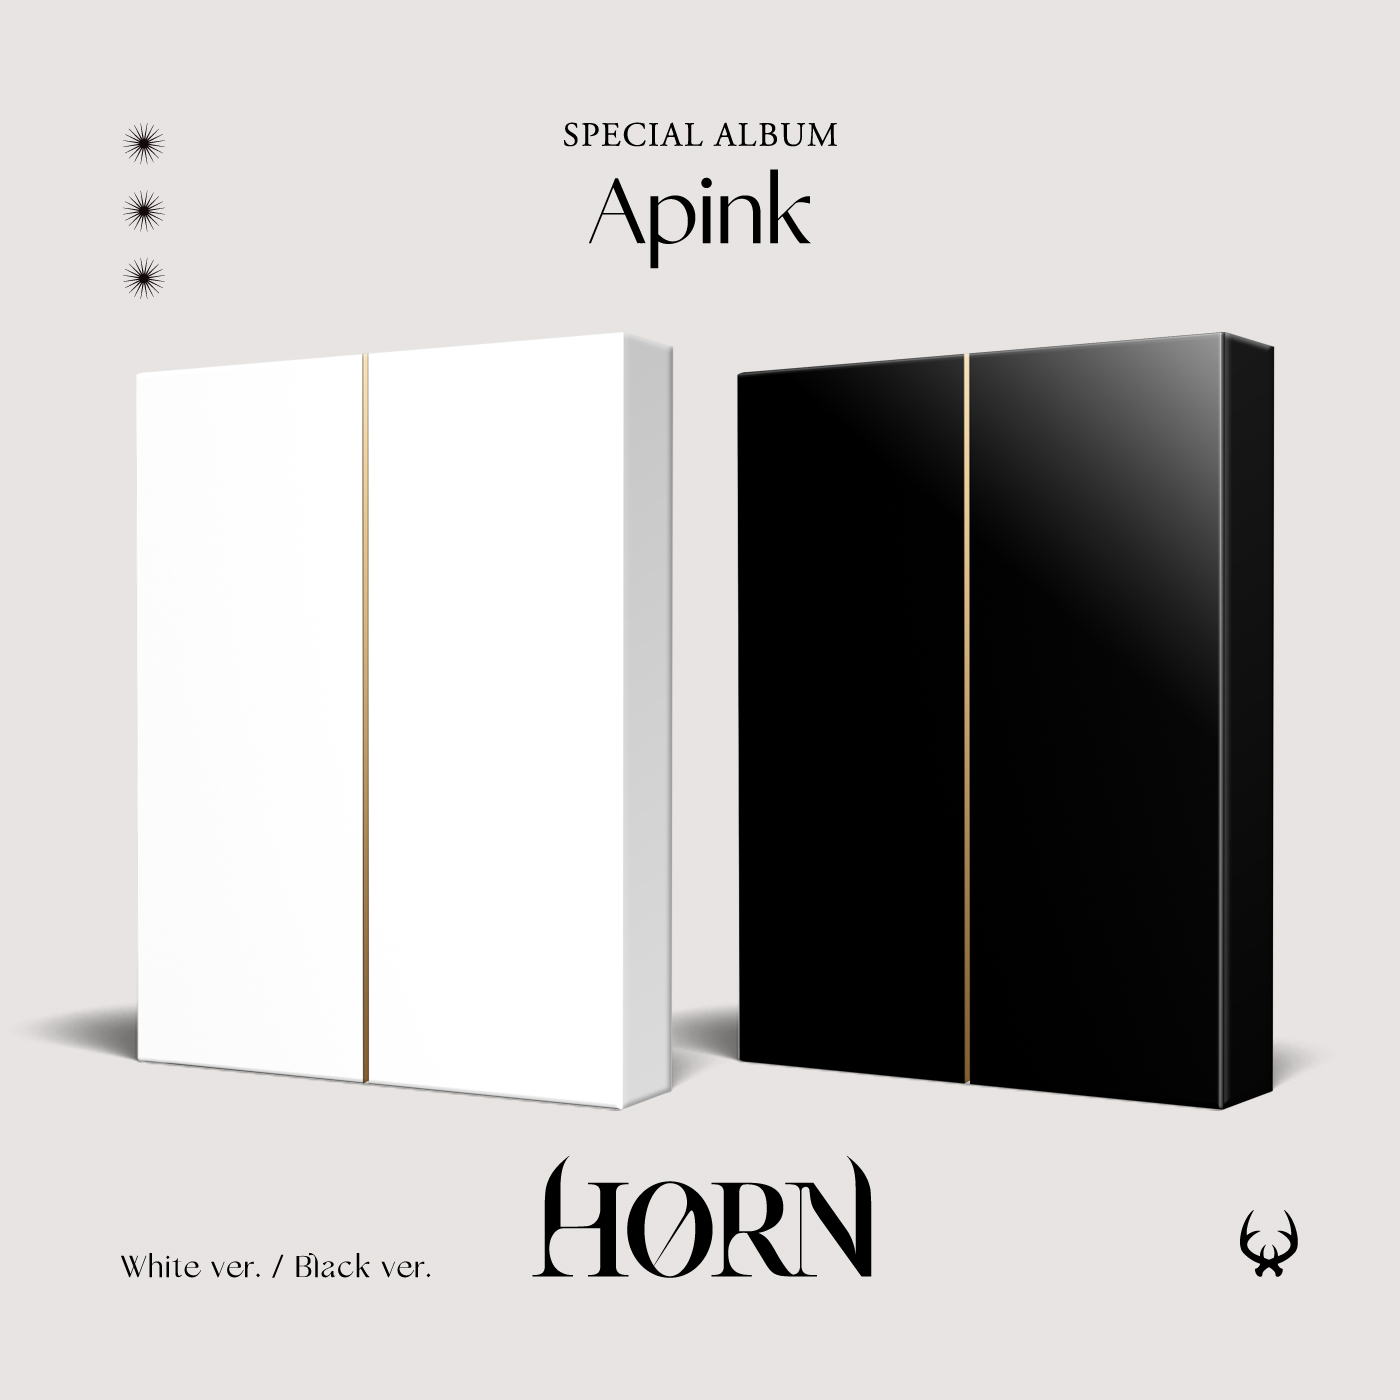 [全款 裸专] Apink - 特别专辑 [HORN]_郑恩地中文首站